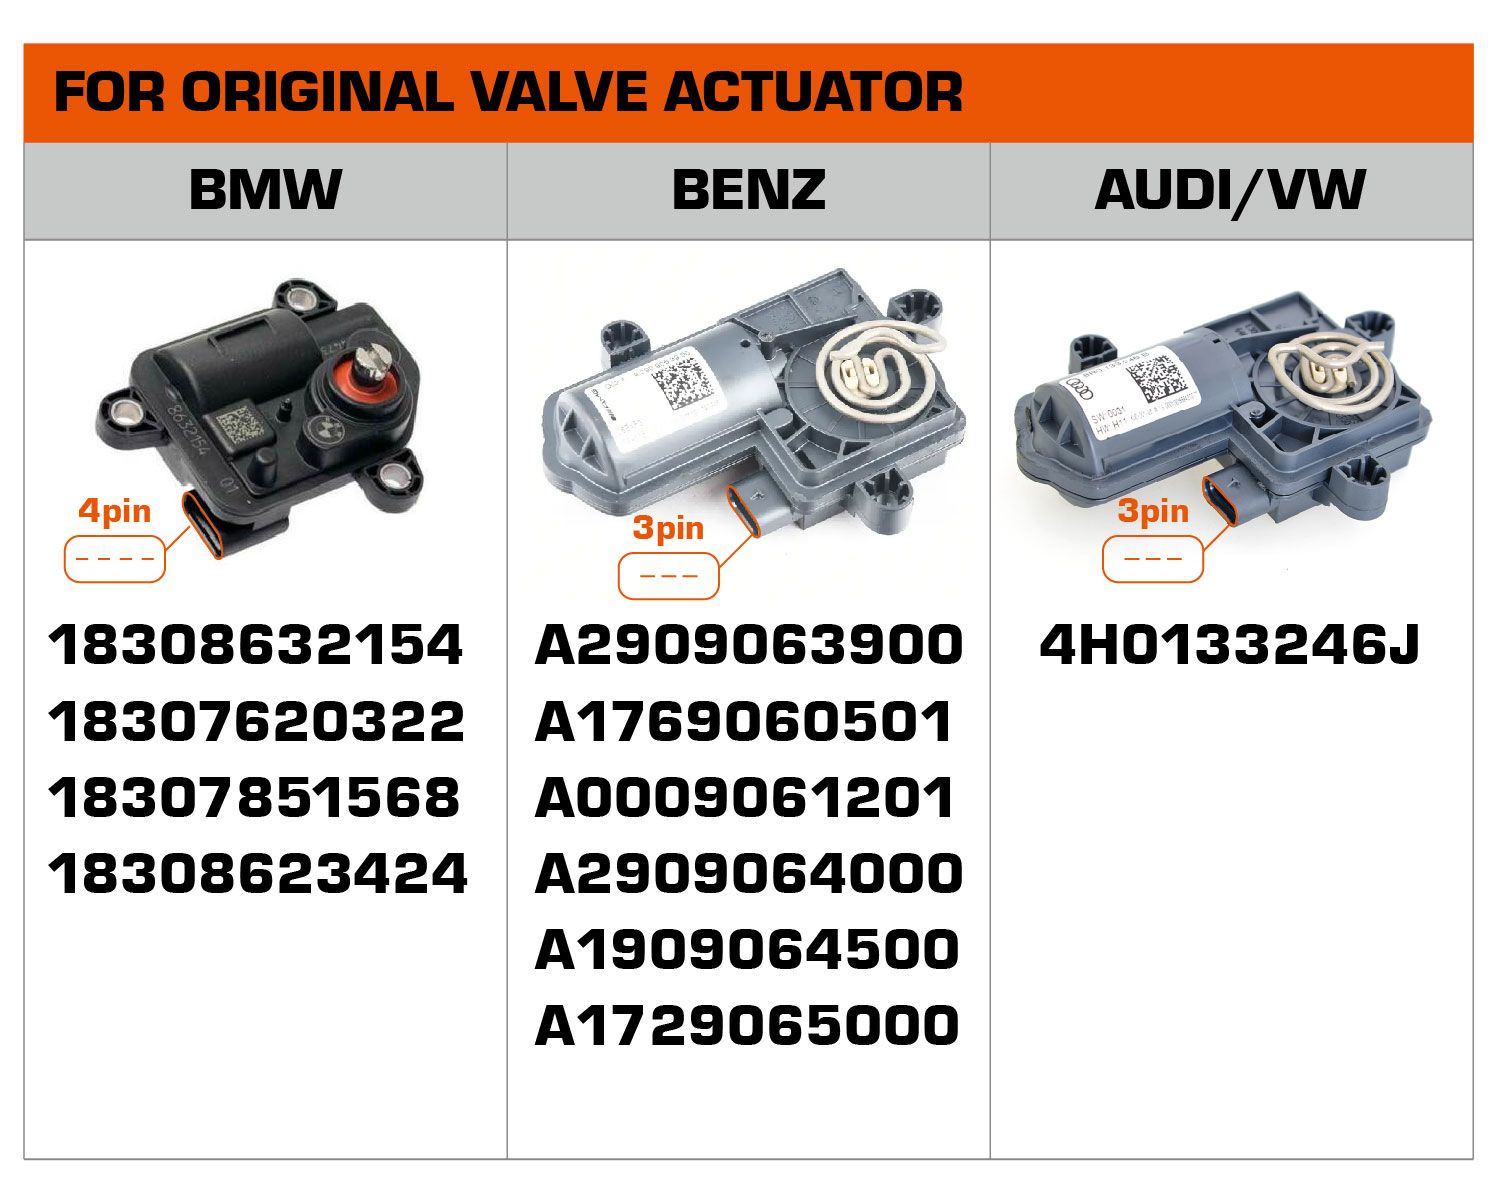 Numéros de pièces pour valve d'origine pouvant être utilisés dans un échappement modifié